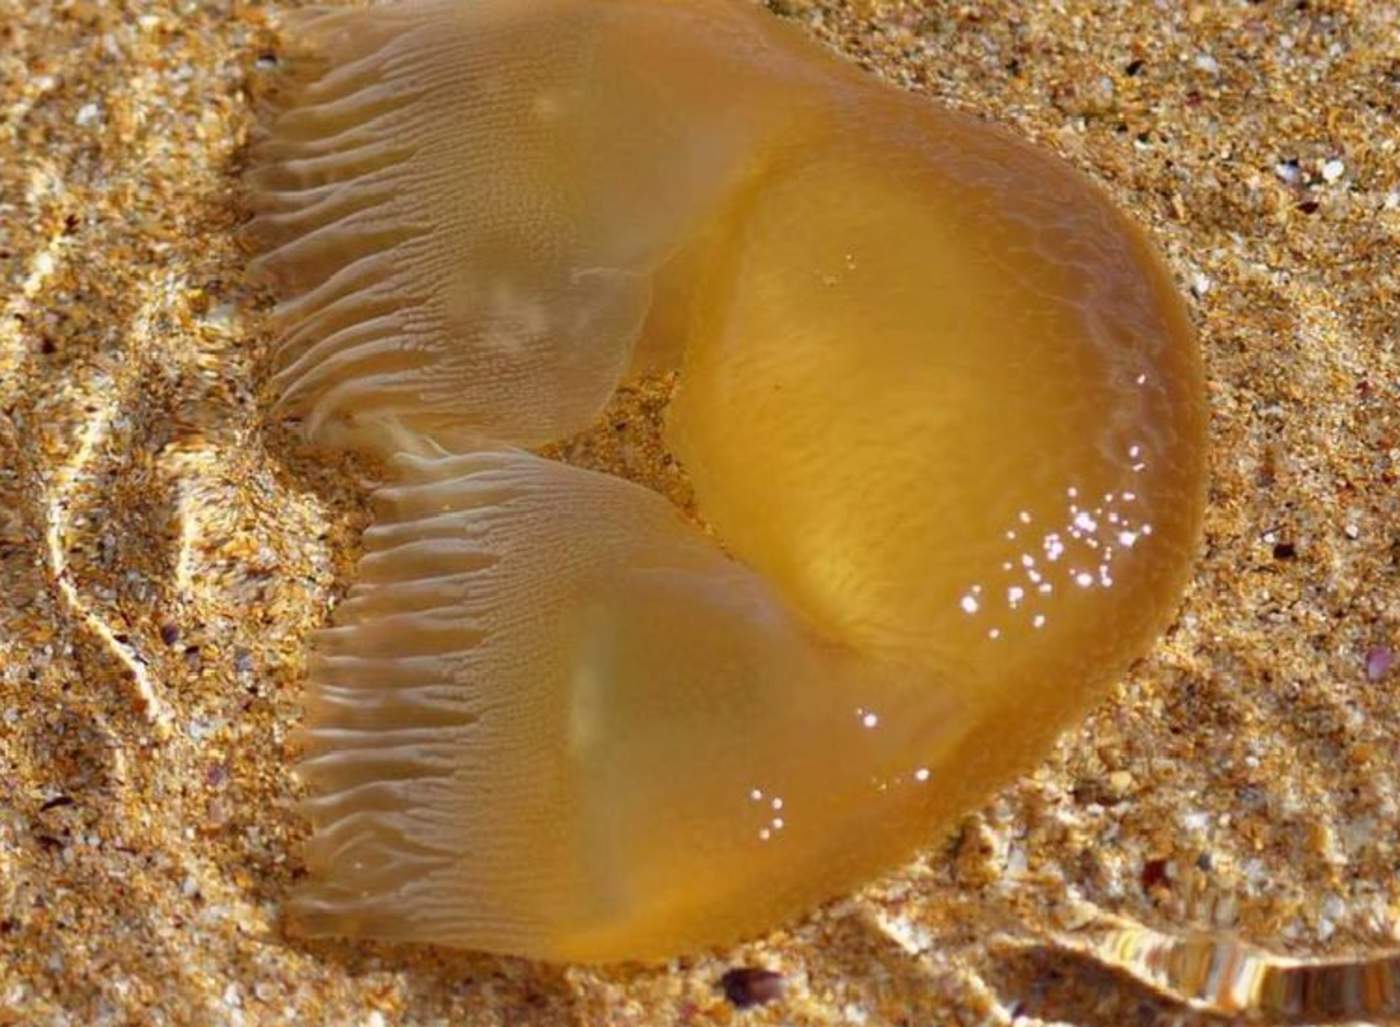 Una medusa muerta y gelatinosa que llegó hasta la playa. (INTERNET)